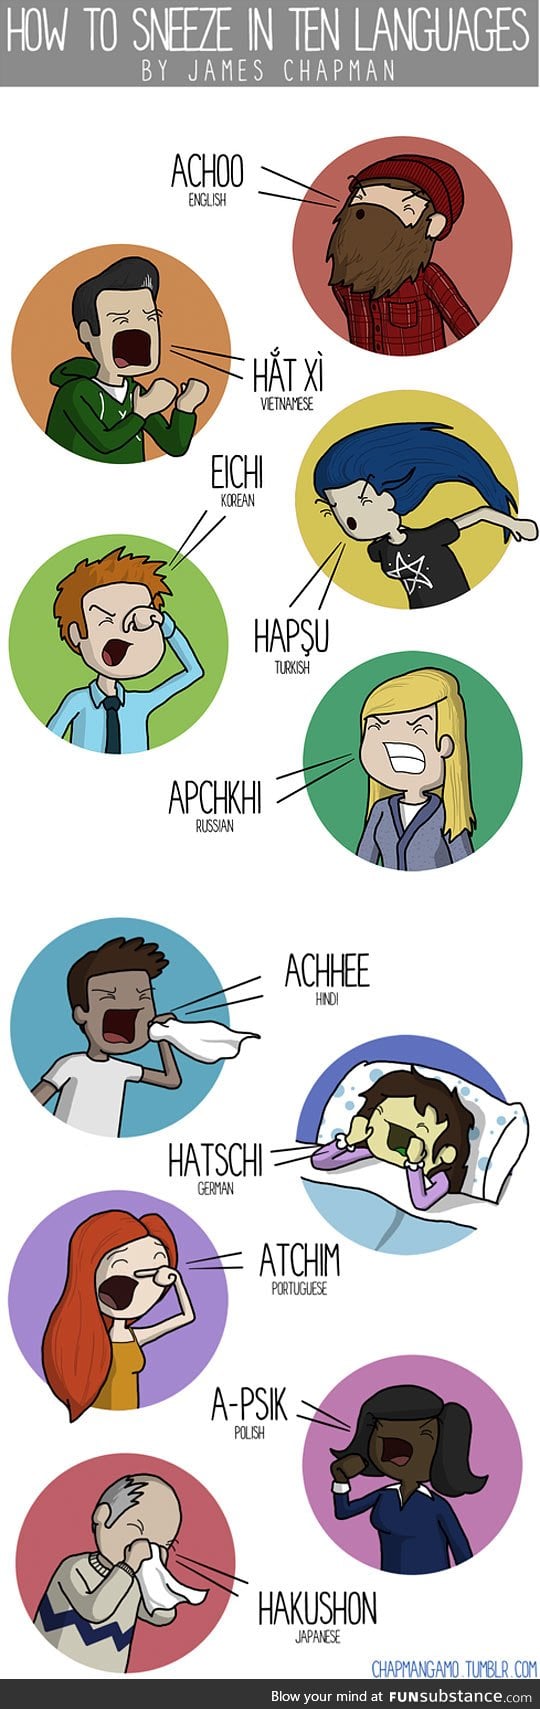 Sneezing in 10 languages